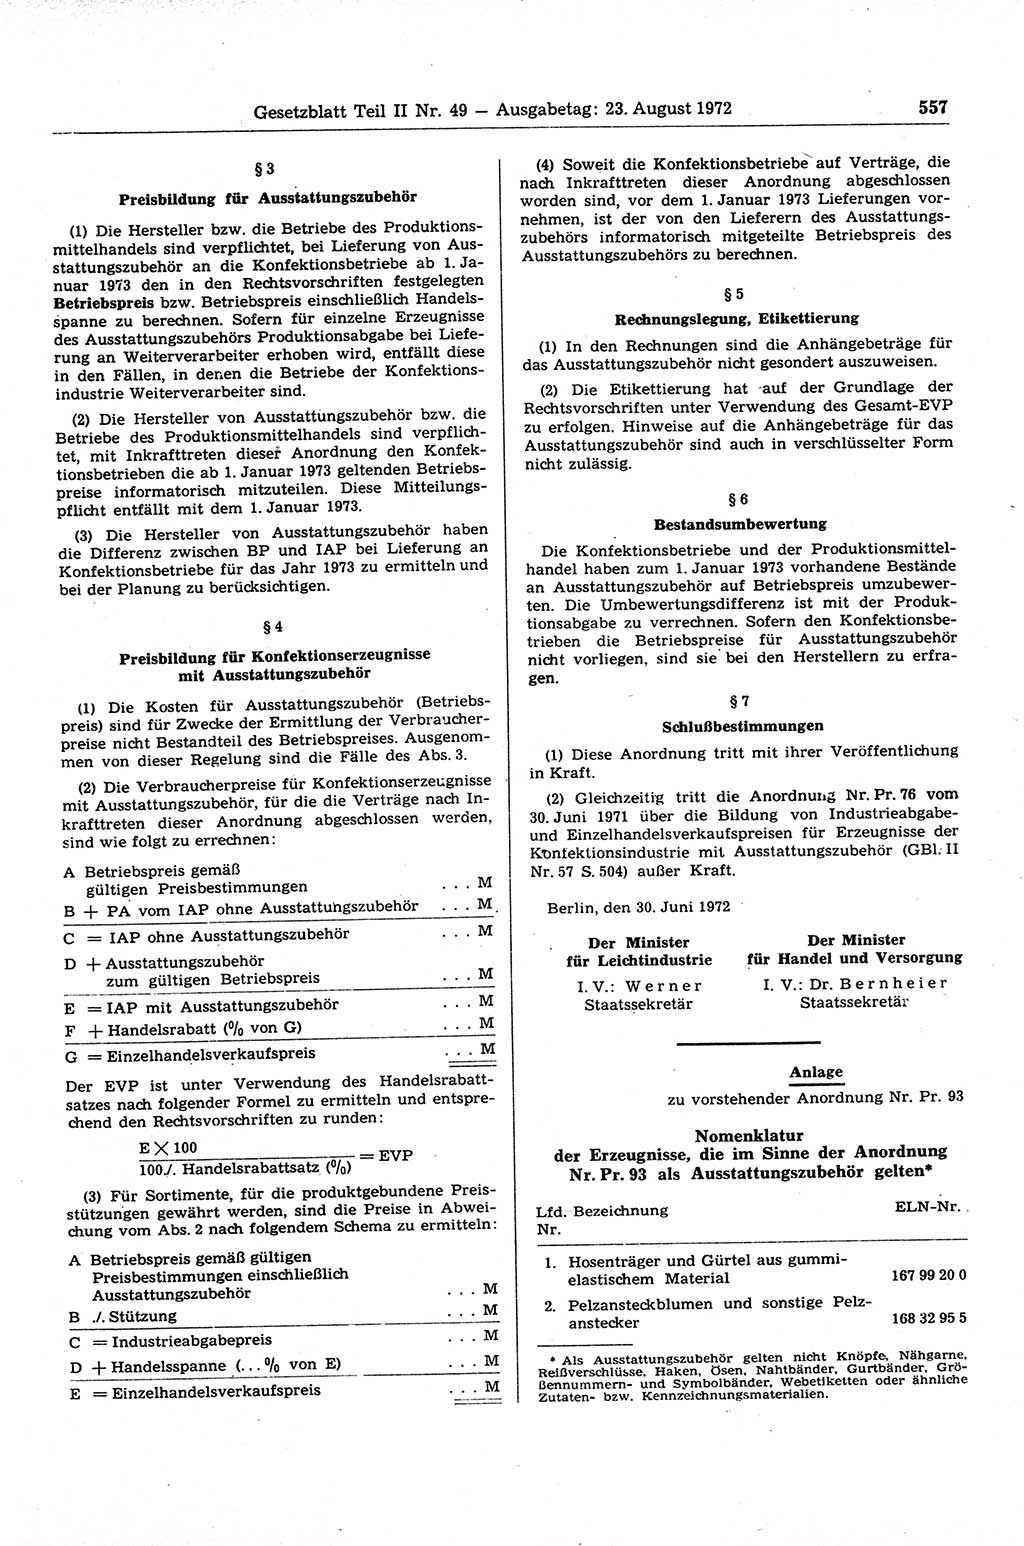 Gesetzblatt (GBl.) der Deutschen Demokratischen Republik (DDR) Teil ⅠⅠ 1972, Seite 557 (GBl. DDR ⅠⅠ 1972, S. 557)